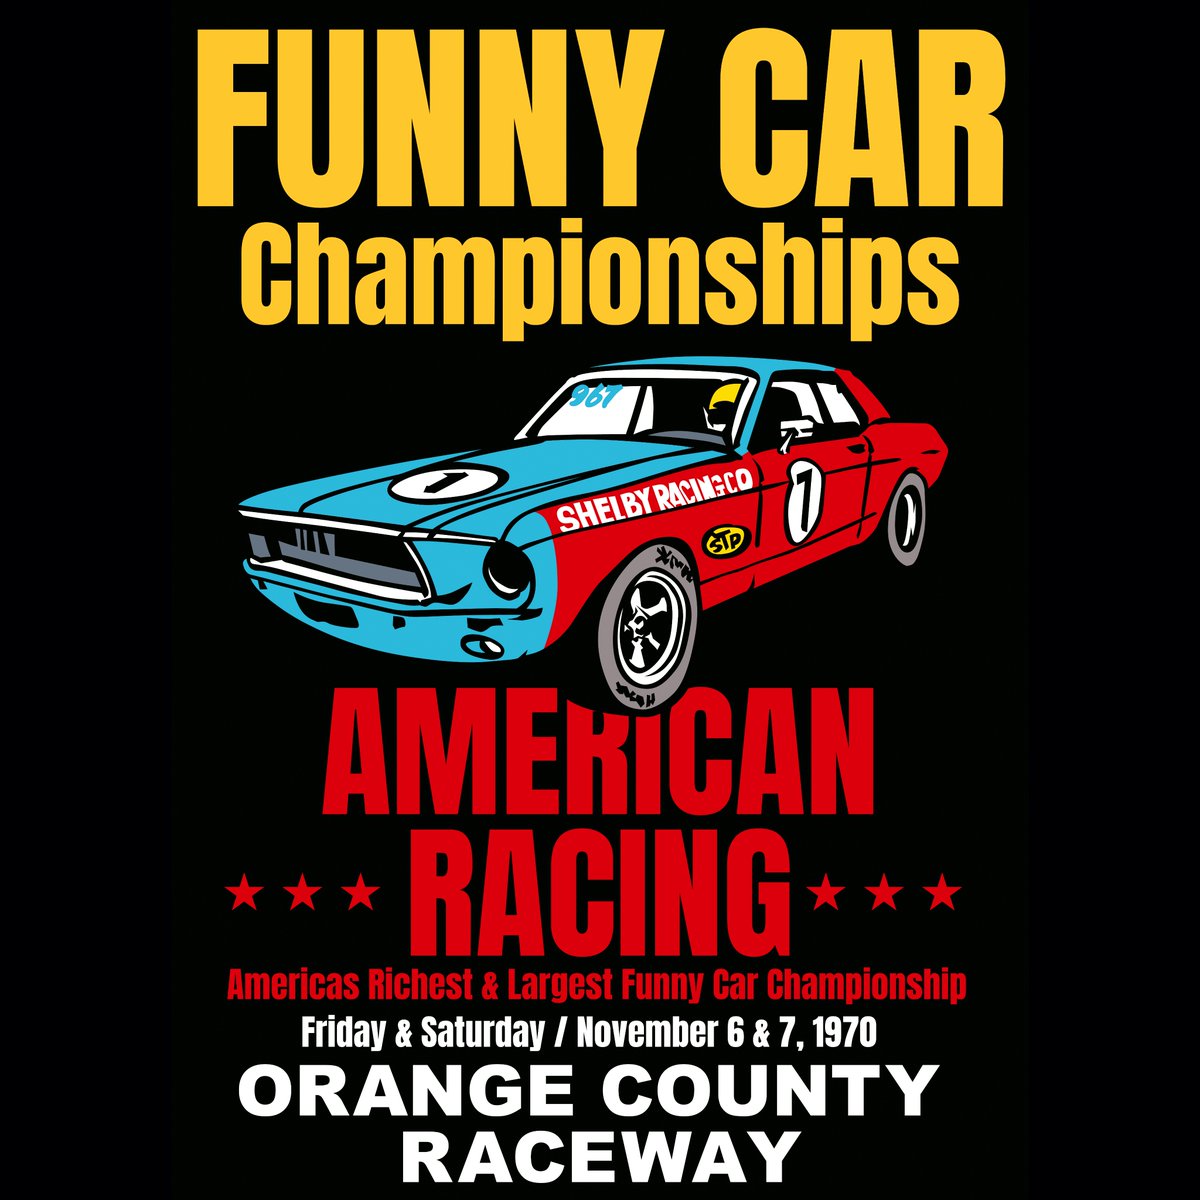 描いたのはアメリカン「Funny Car Championships」架空のレースポスター！#funnycar